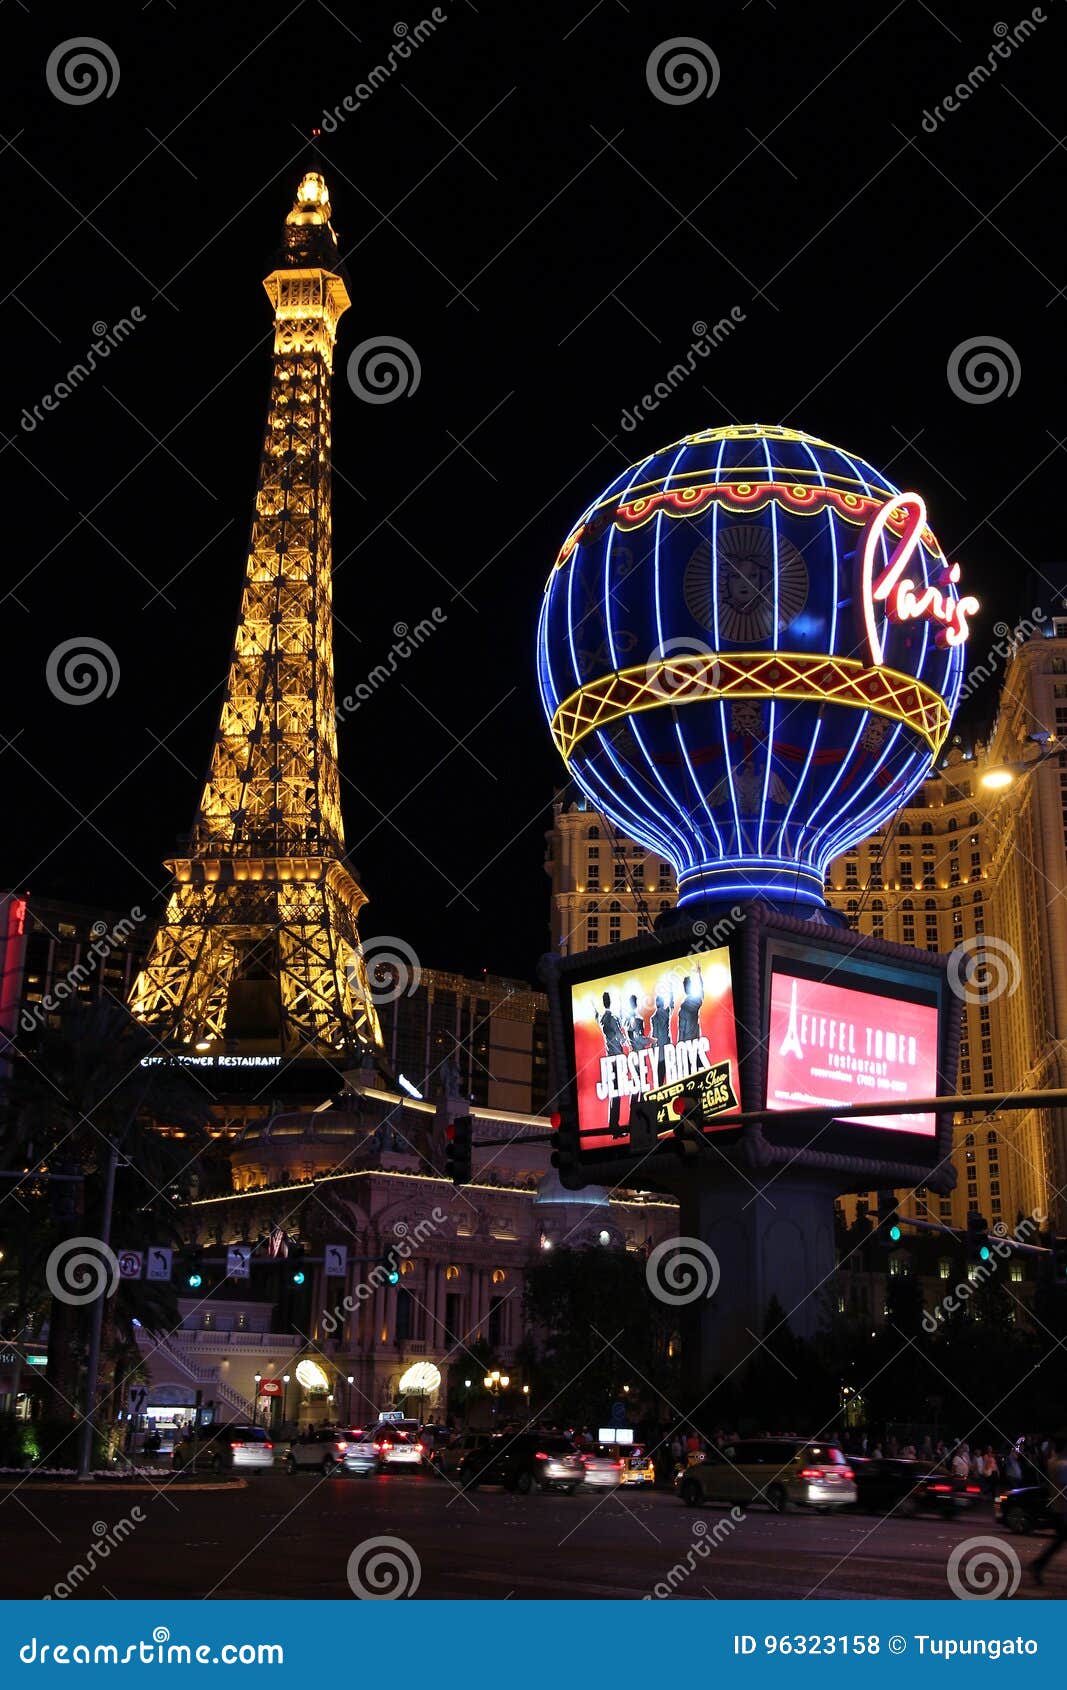 Las Vegas, Paris hotel editorial stock image. Image of strip - 59235279